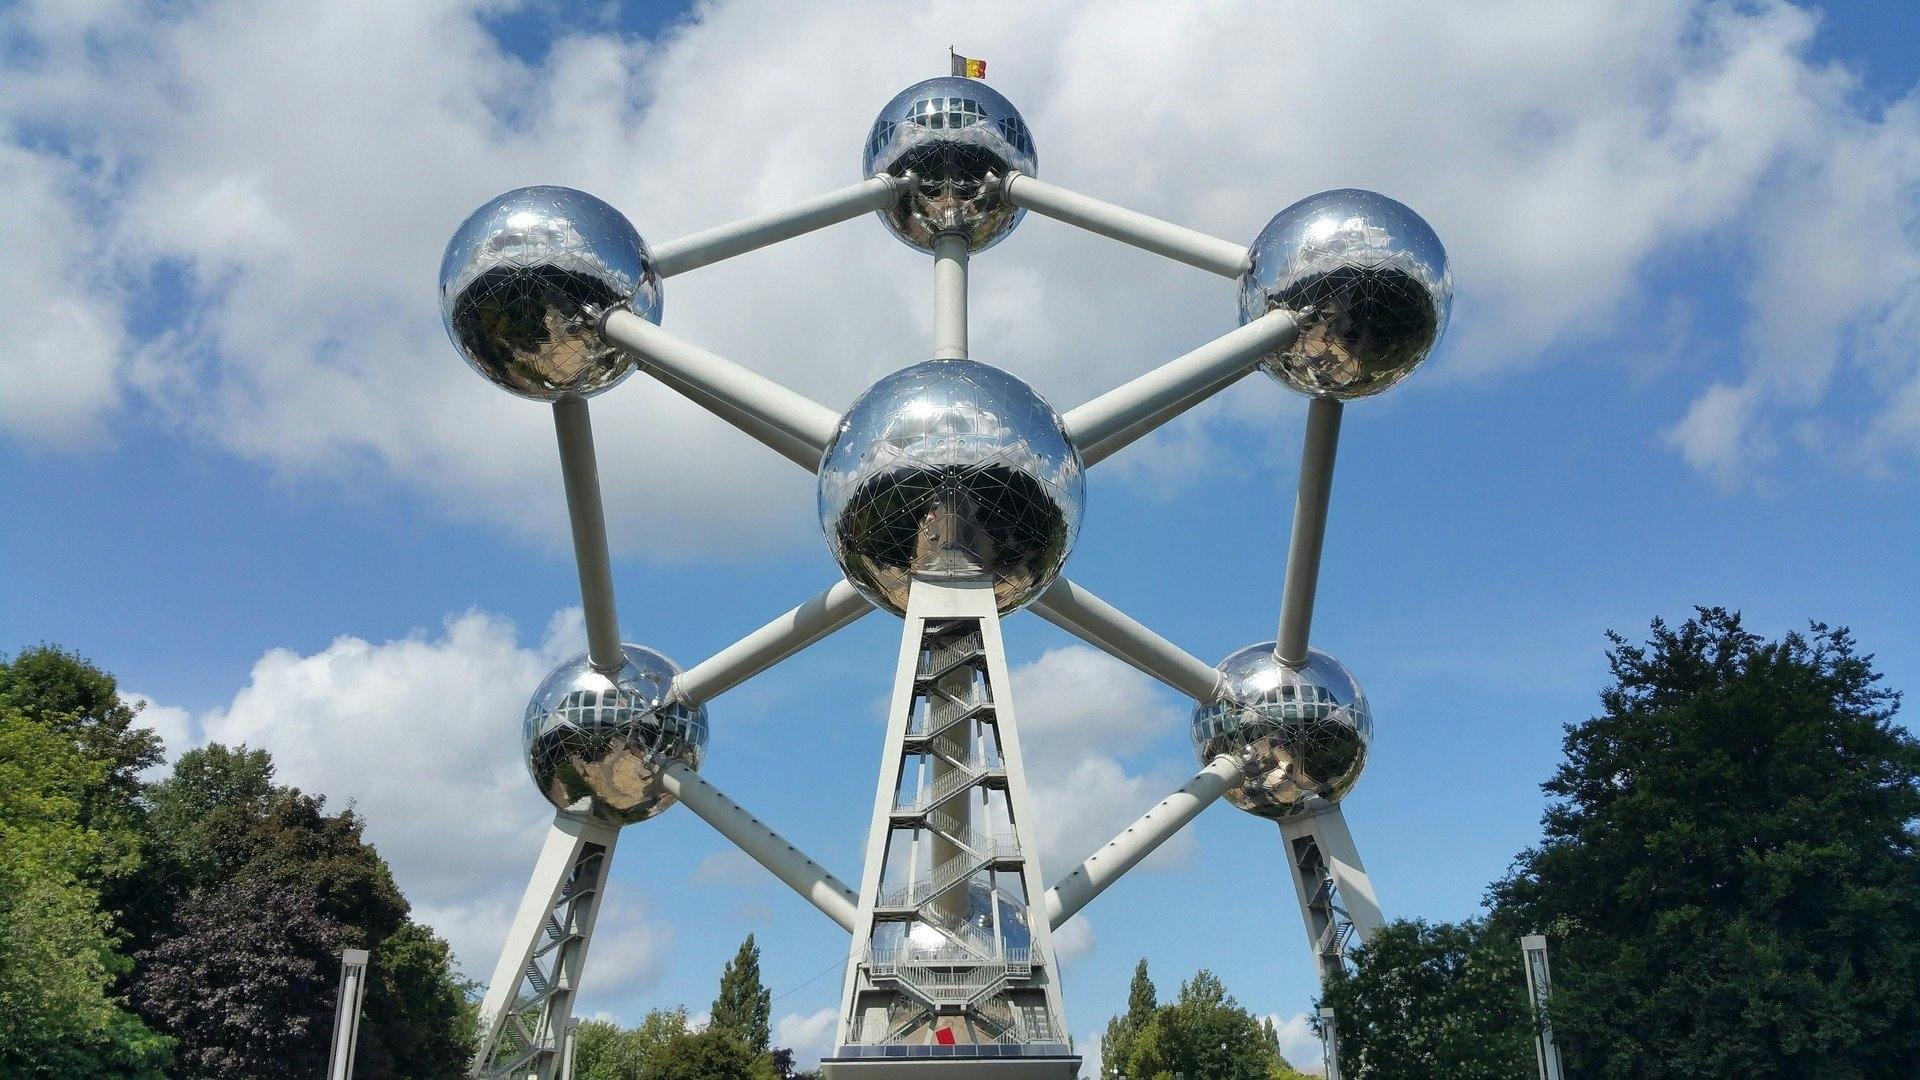 Visita turística a Bruselas con parada en el Atomium